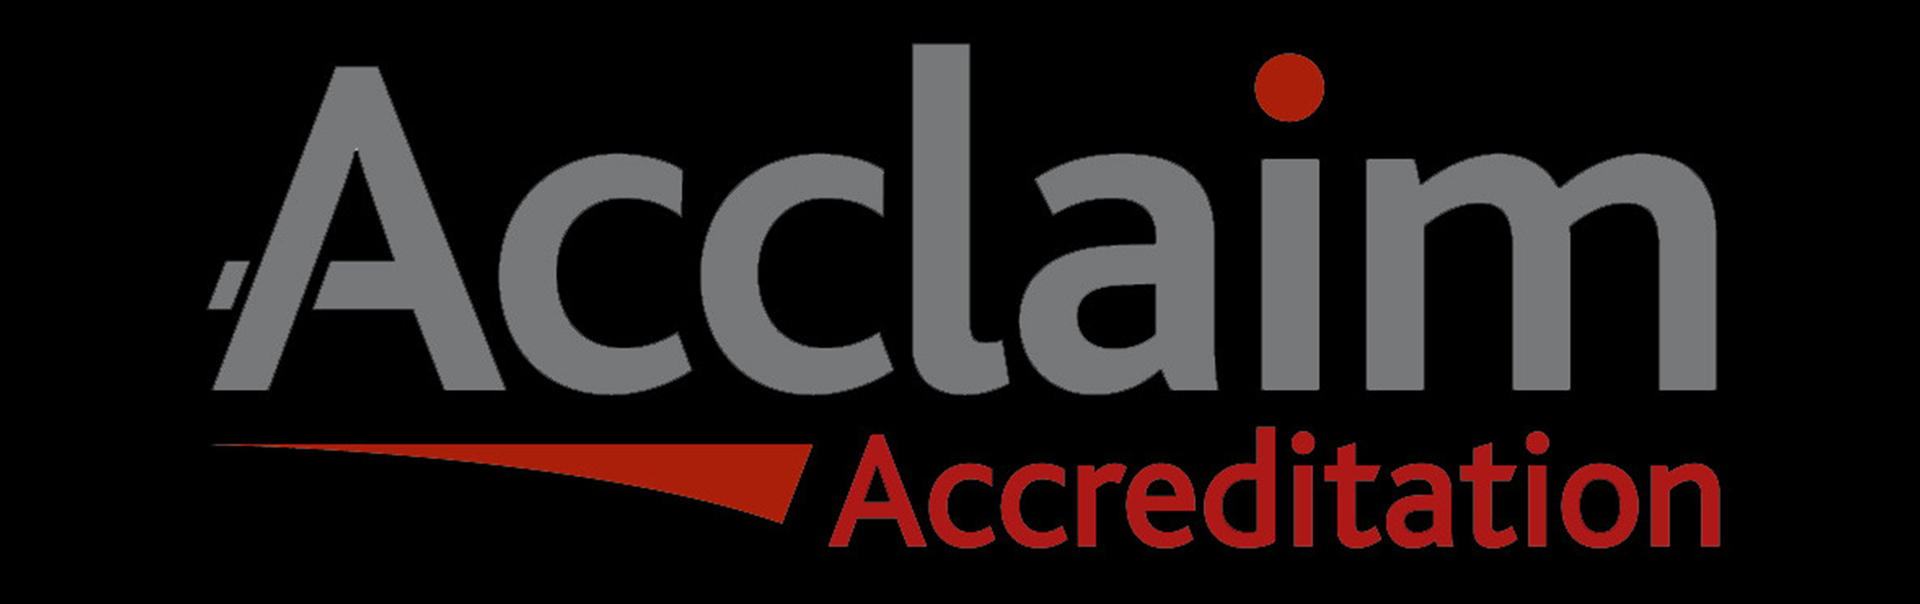 acclaim accreditation logo